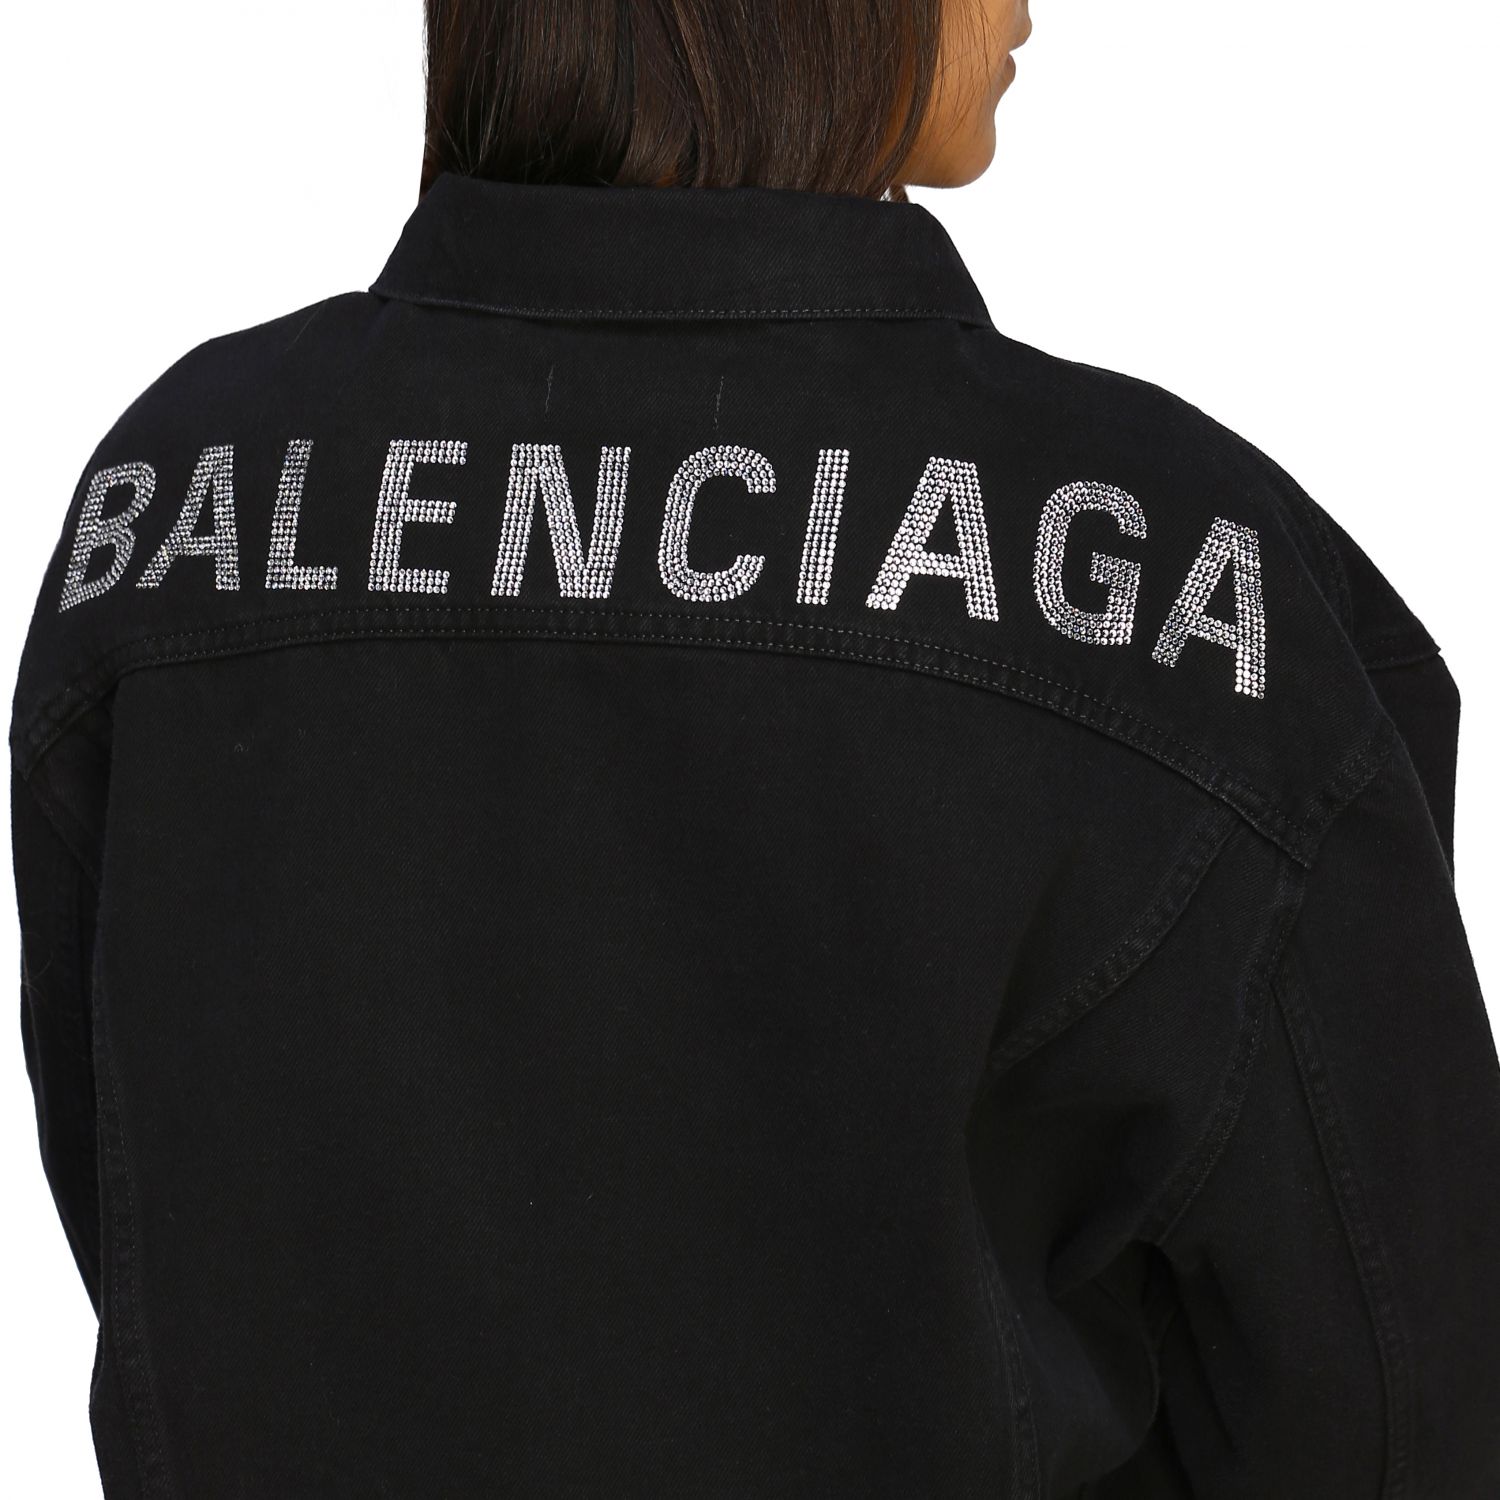 Куртка баленсиага женская. Черная куртка Баленсиага. Куртка Баленсиага женская черная. Баленсиага логотип на куртке. Куртка Balenciaga Crew.